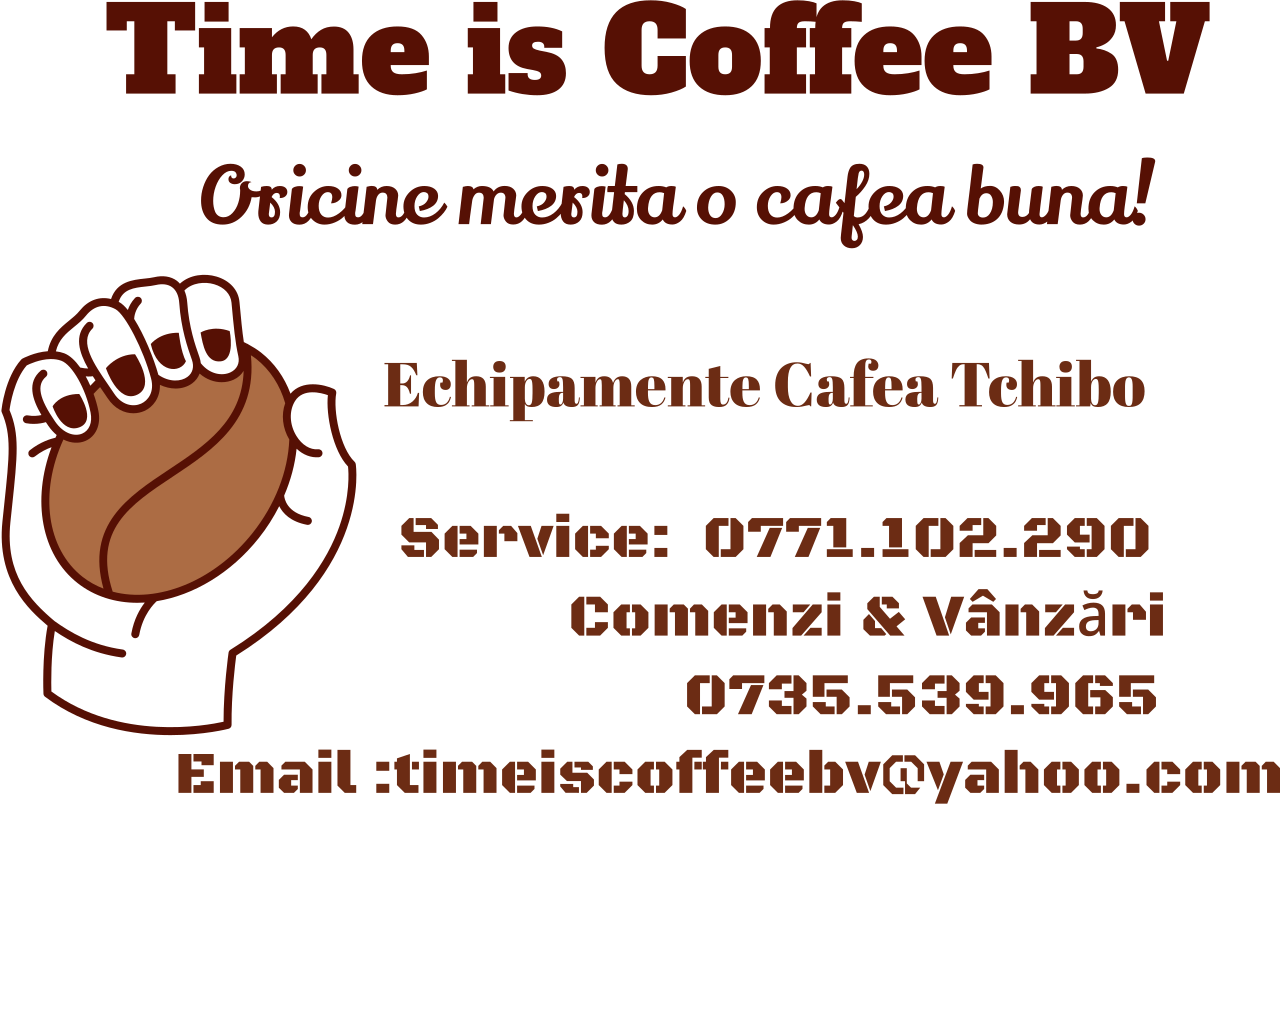 Cafea , Echipamente, Service's logo